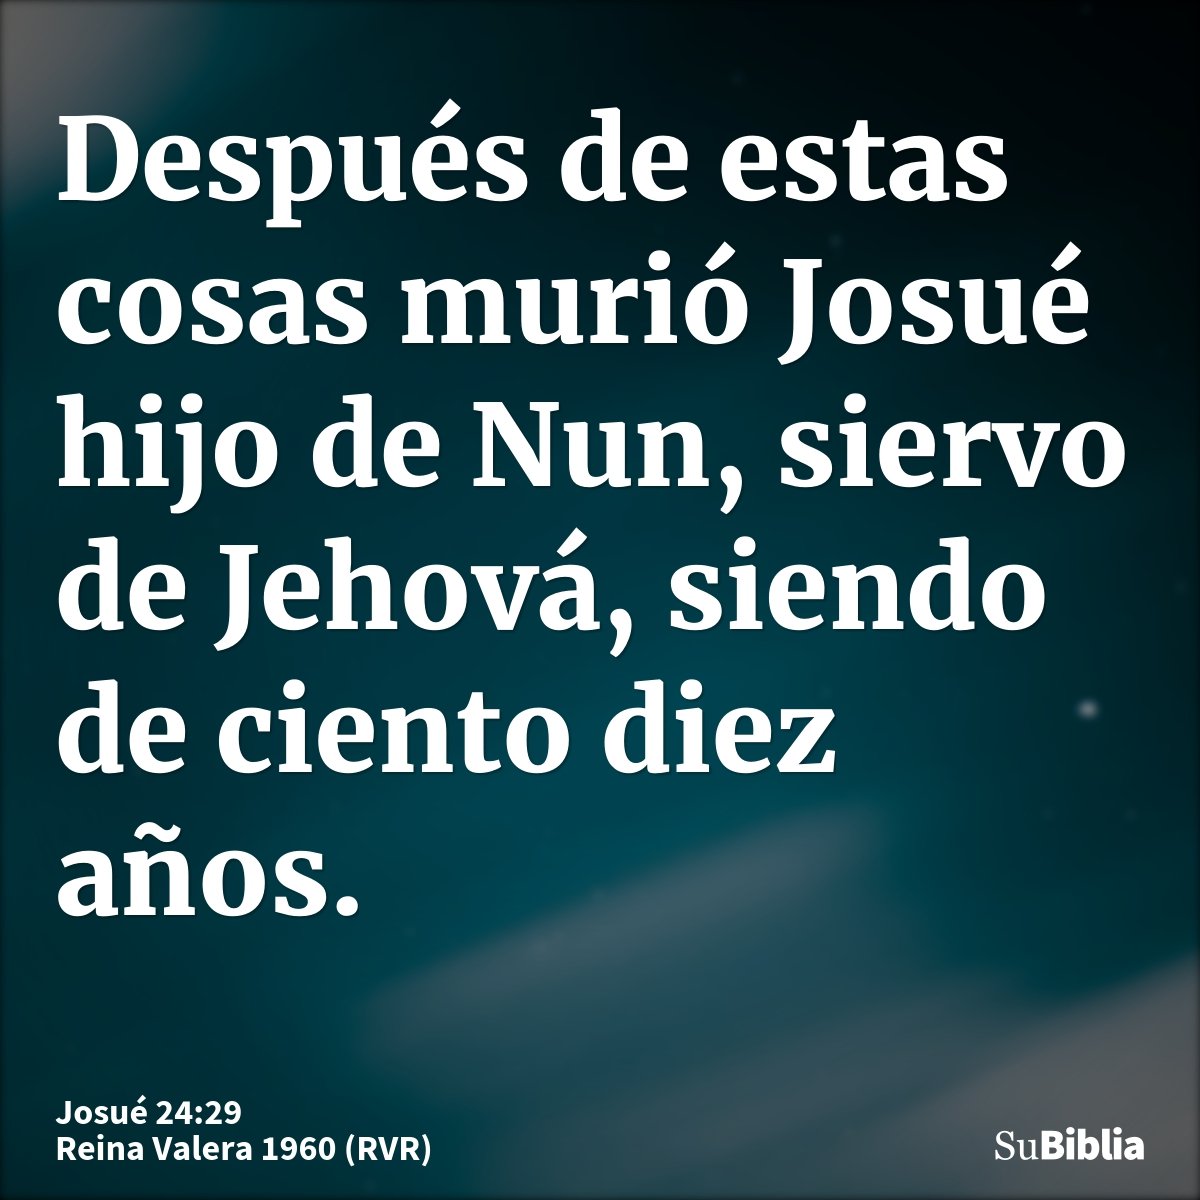 Después de estas cosas murió Josué hijo de Nun, siervo de Jehová, siendo de ciento diez años.